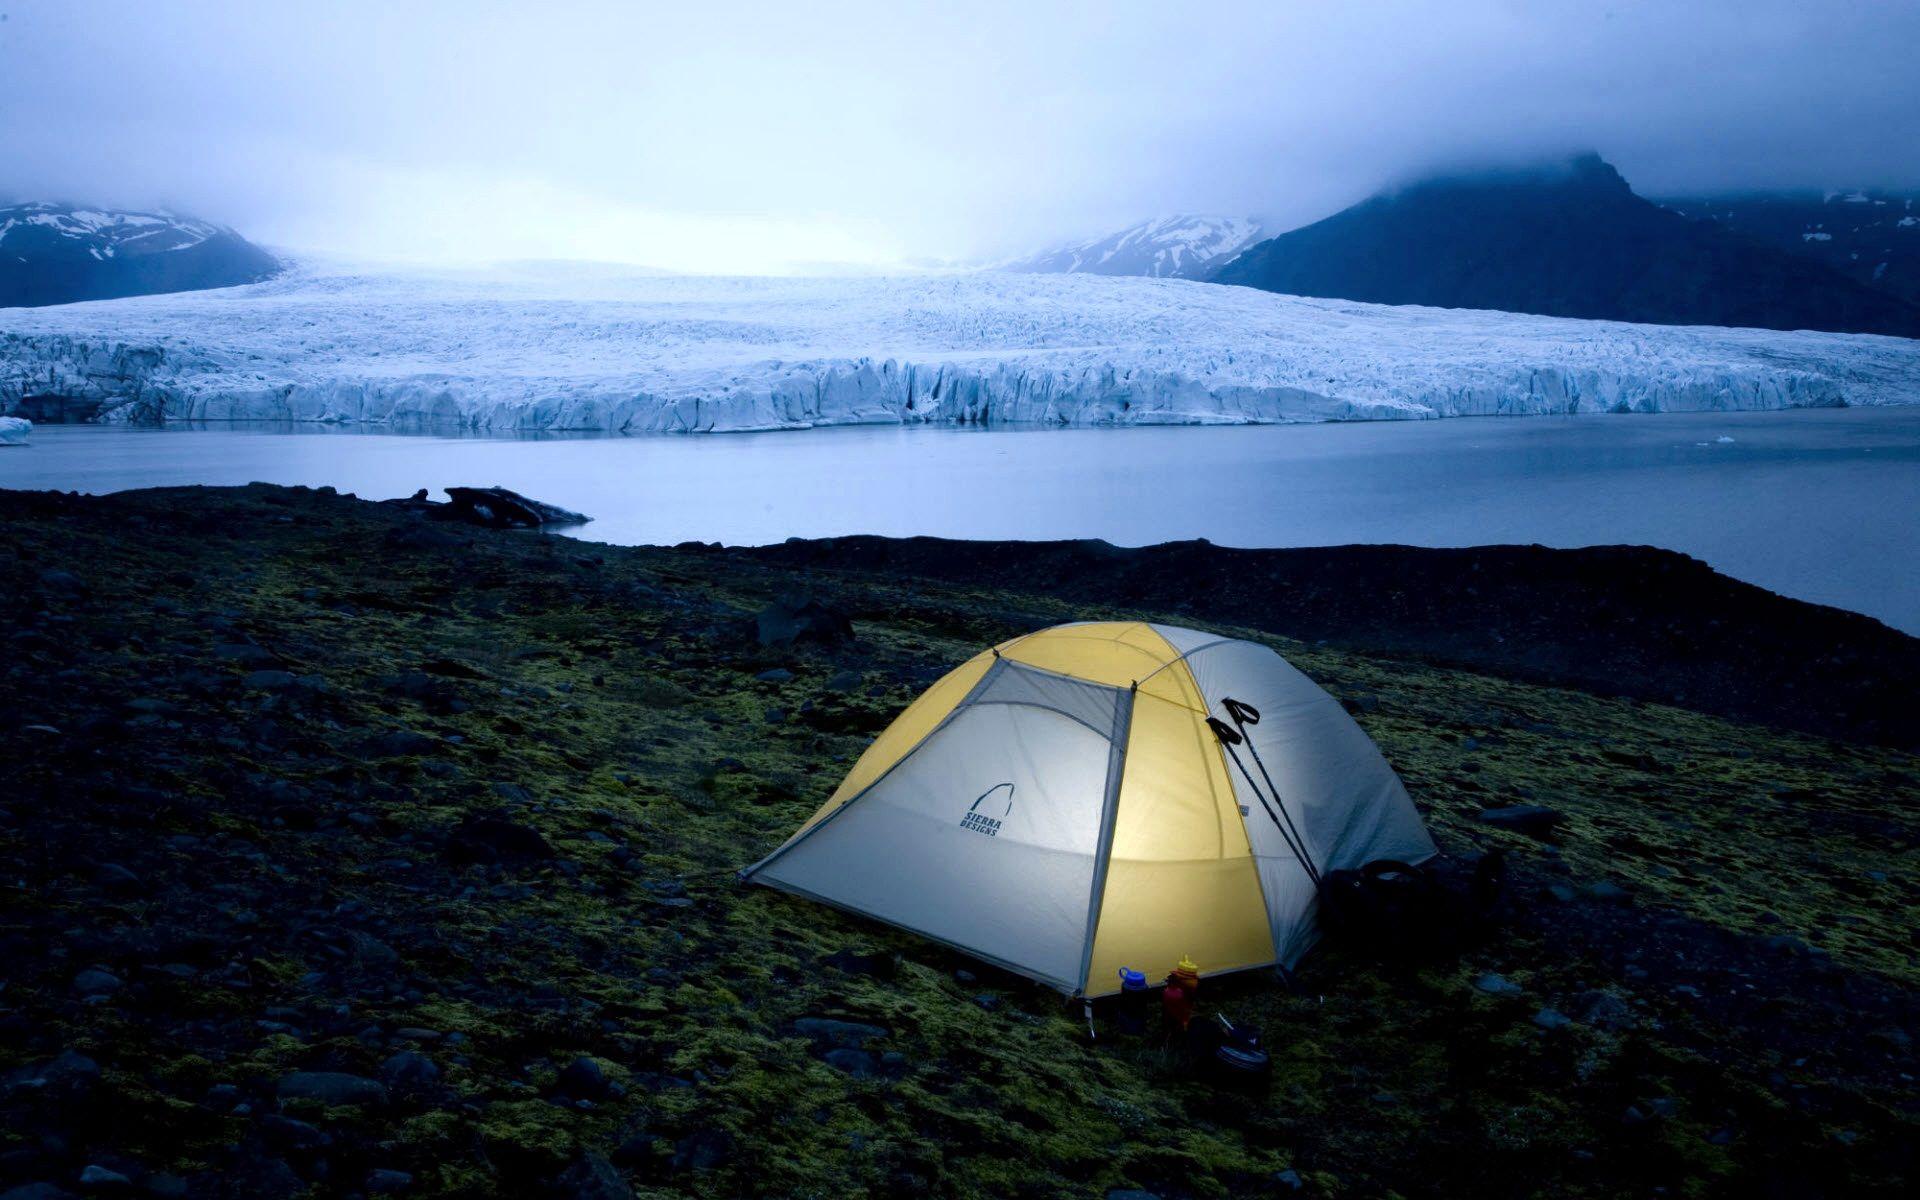 بک گراند کمپ داخل چادر و دریاچه تماشایی برای دانلود رایگان 